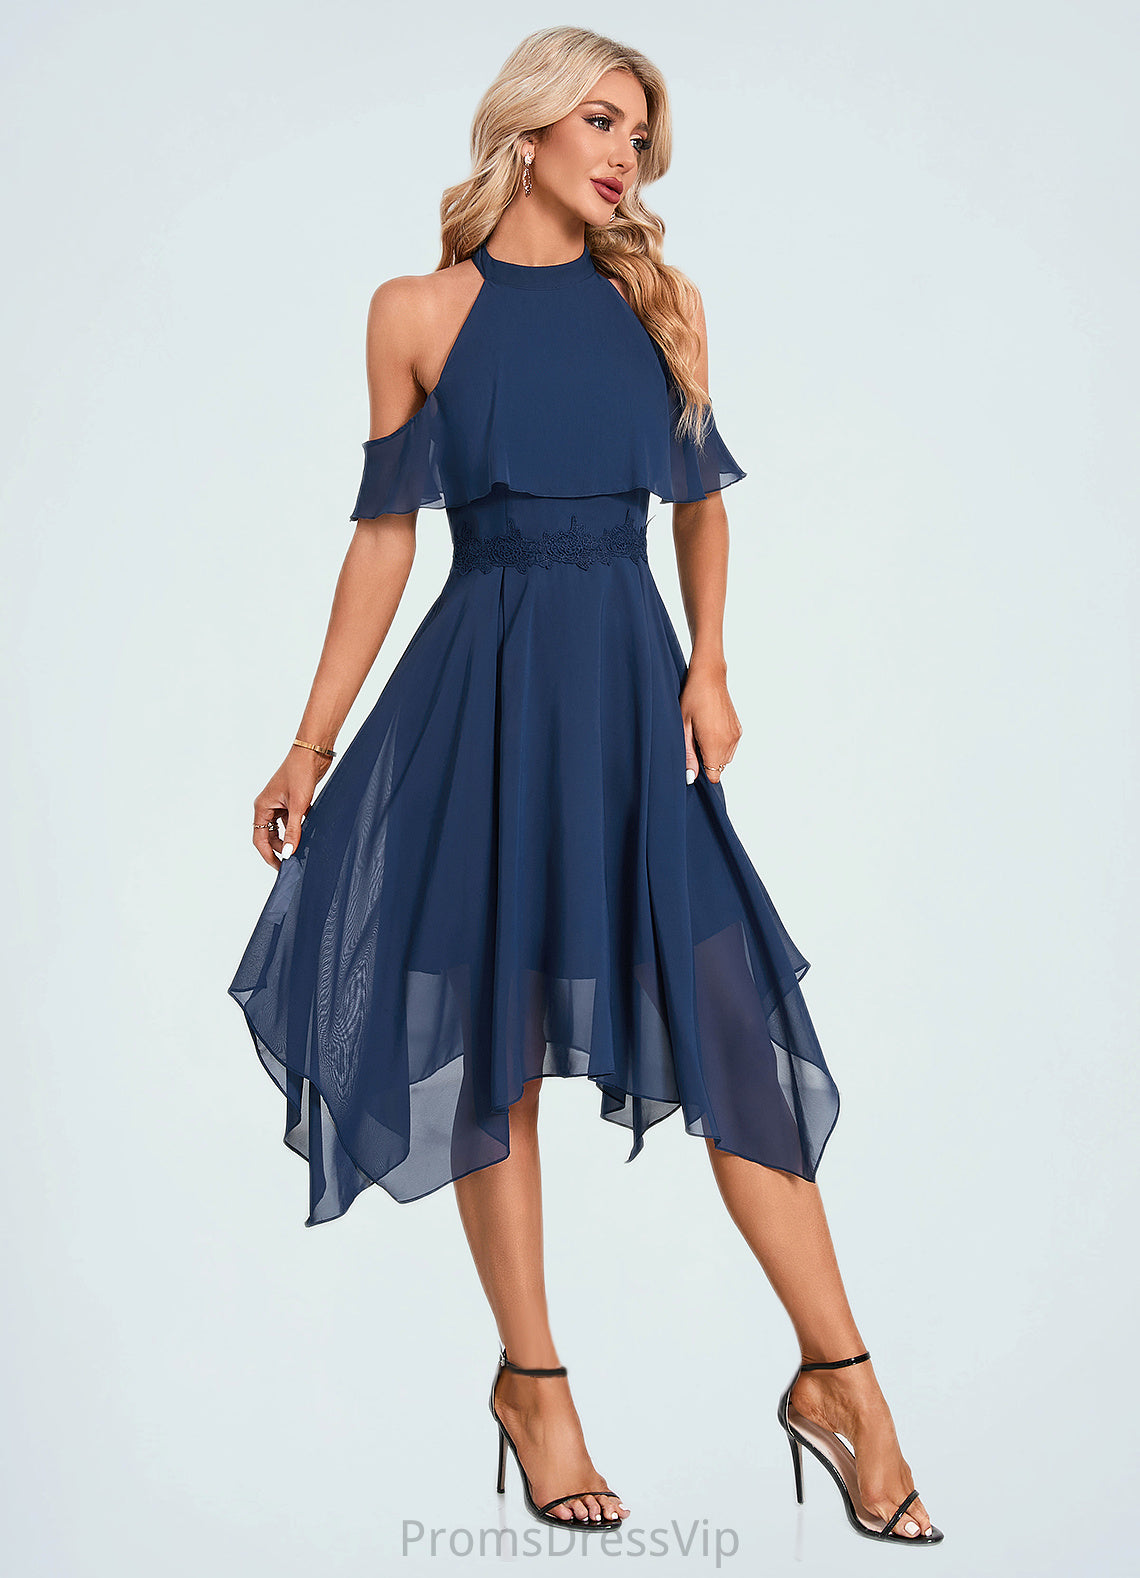 Lexi Appliques Lace Off the Shoulder Elegant A-line Chiffon Asymmetrical Dresses HLP0022489